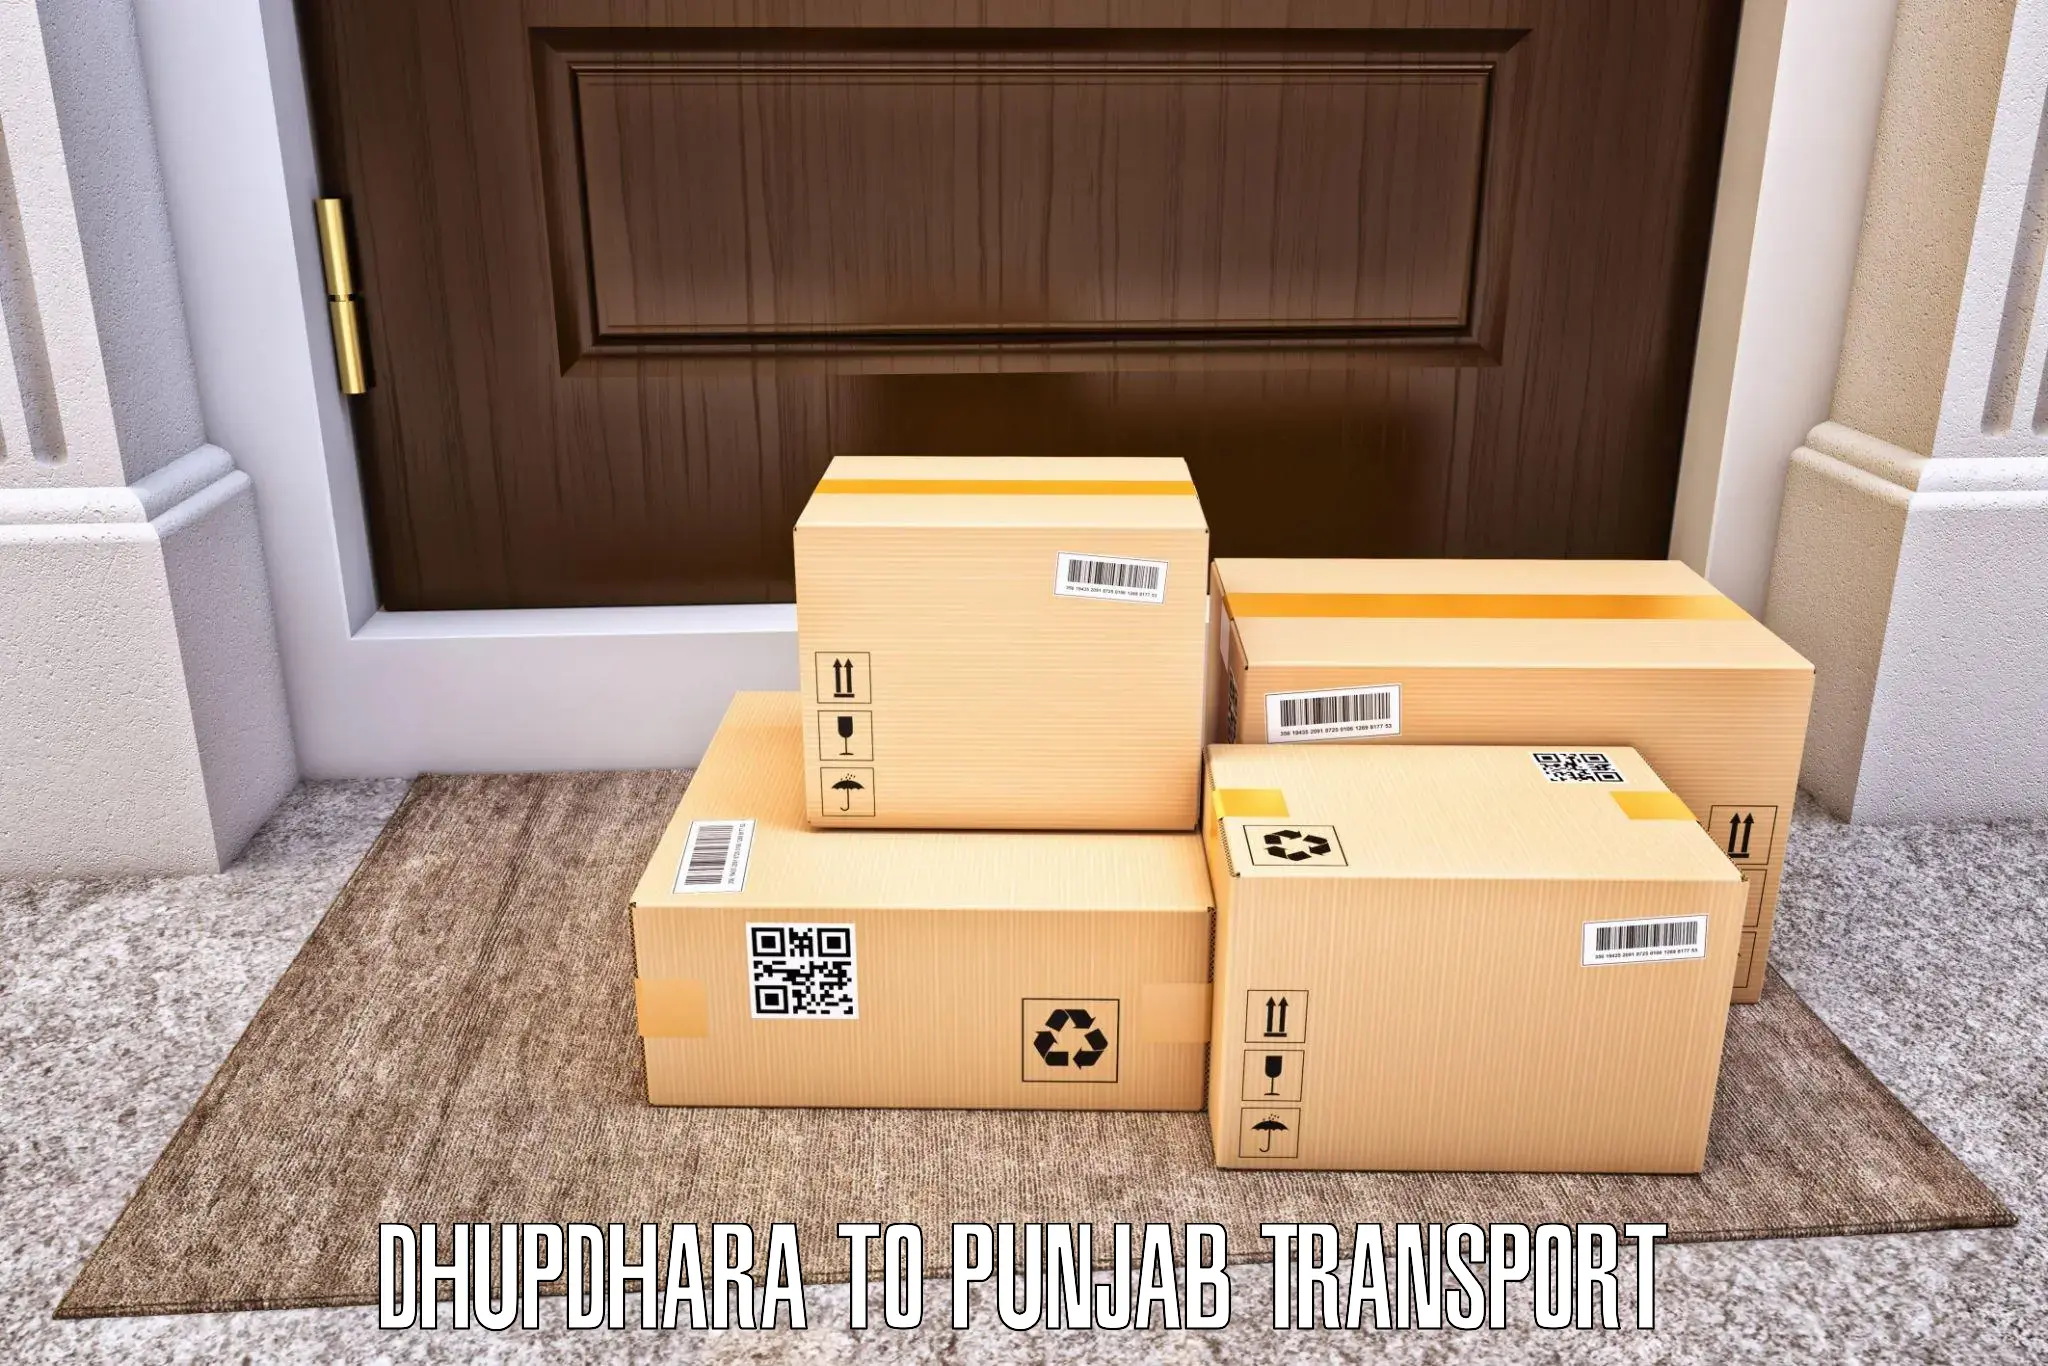 Transportation services Dhupdhara to Rampura Phul